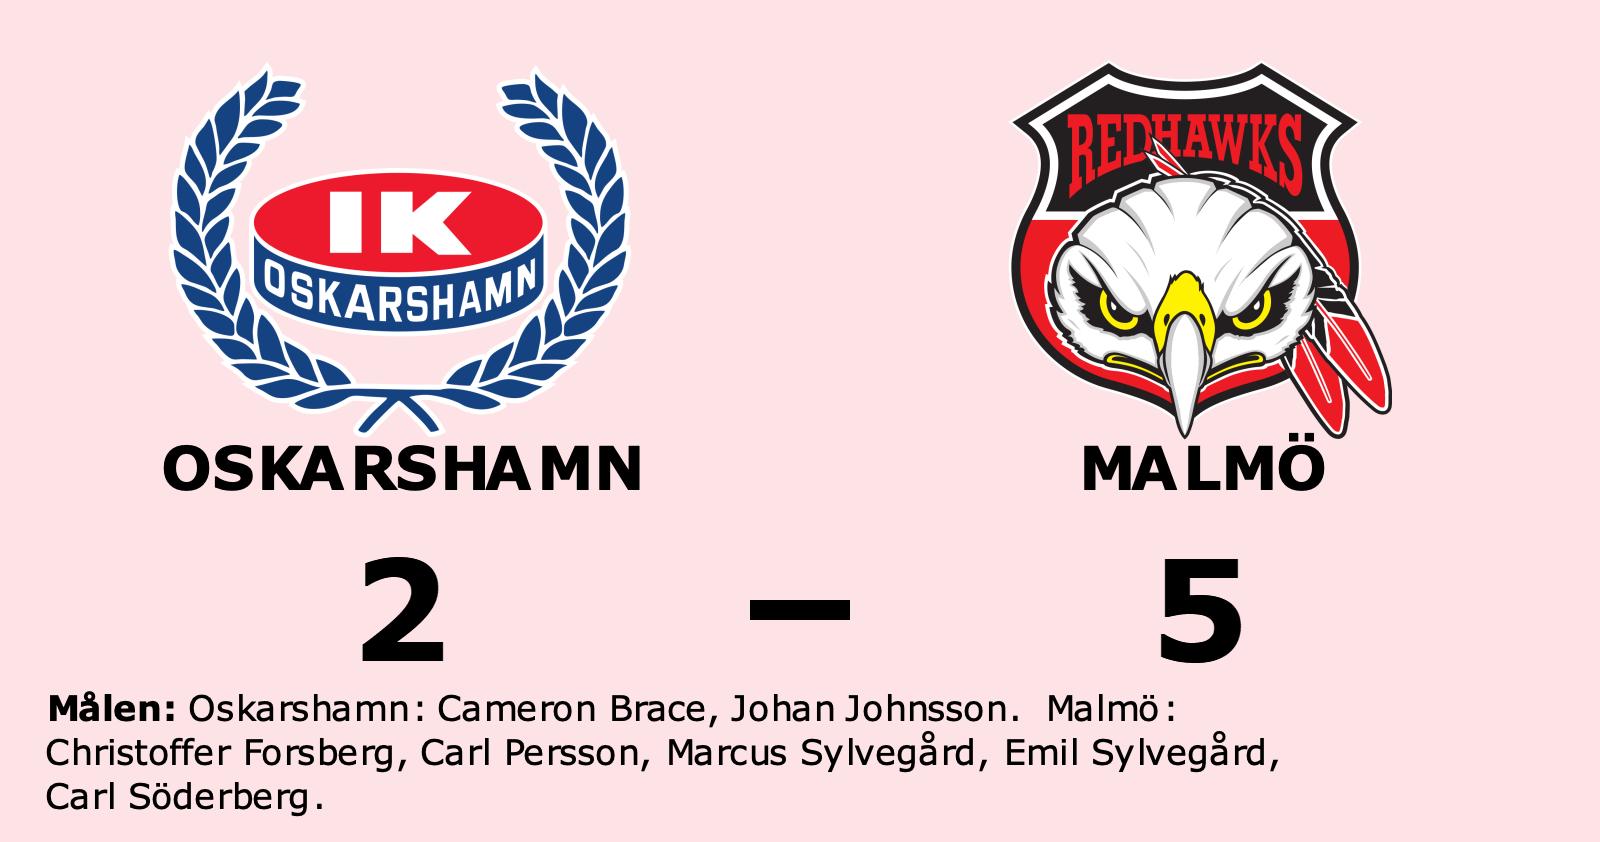 Malmö Redhawks: Malmö slog Oskarshamn på bortaplan